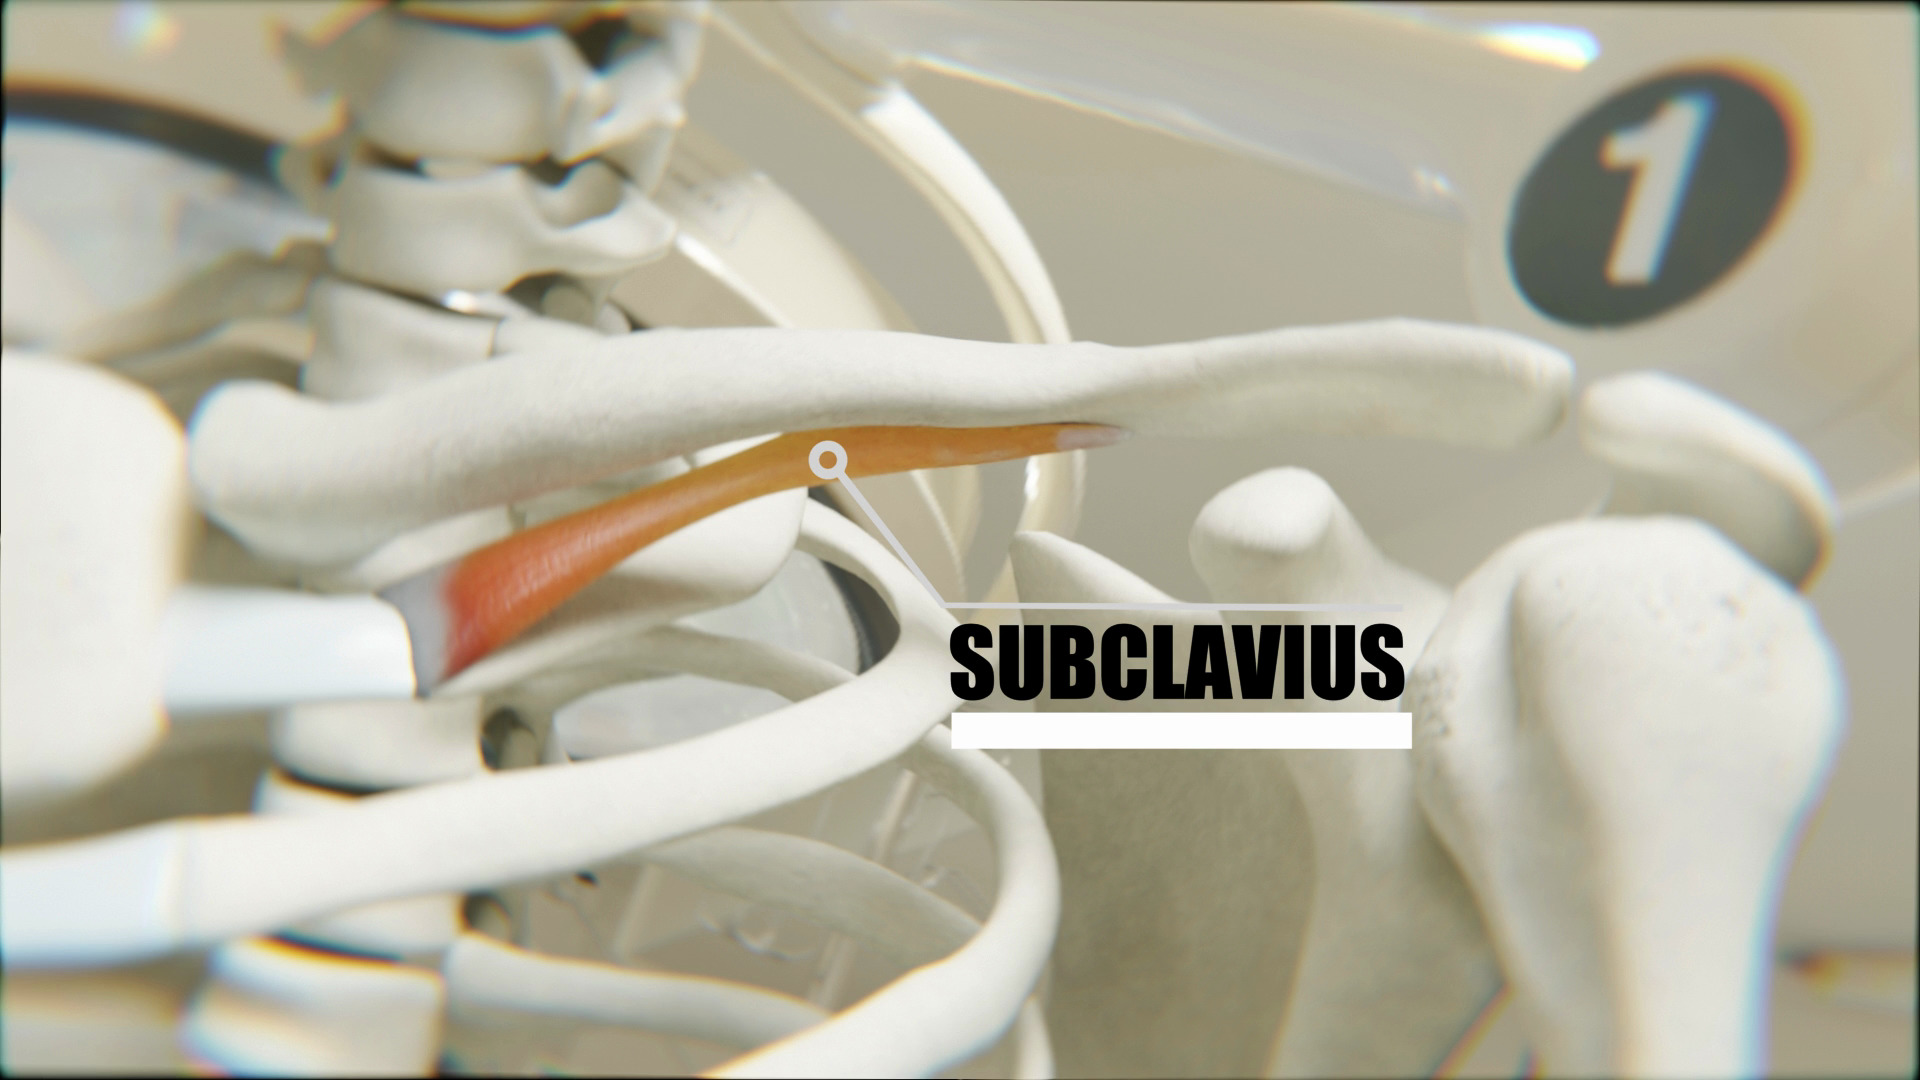 Subclavius